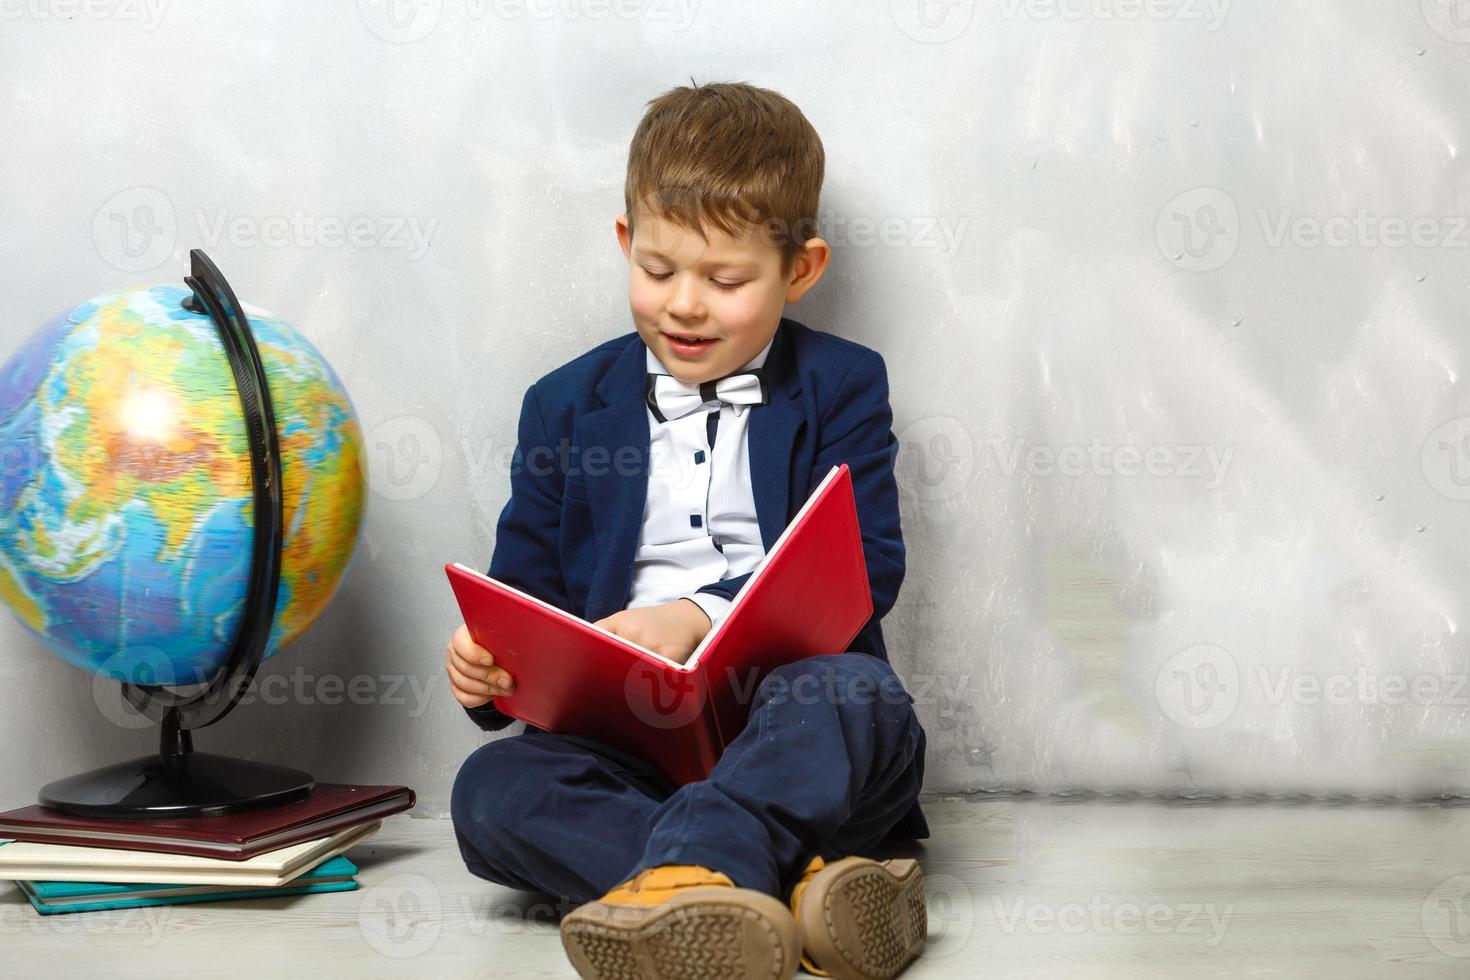 kleiner Student, der Bücher hält, Selbstbildung foto